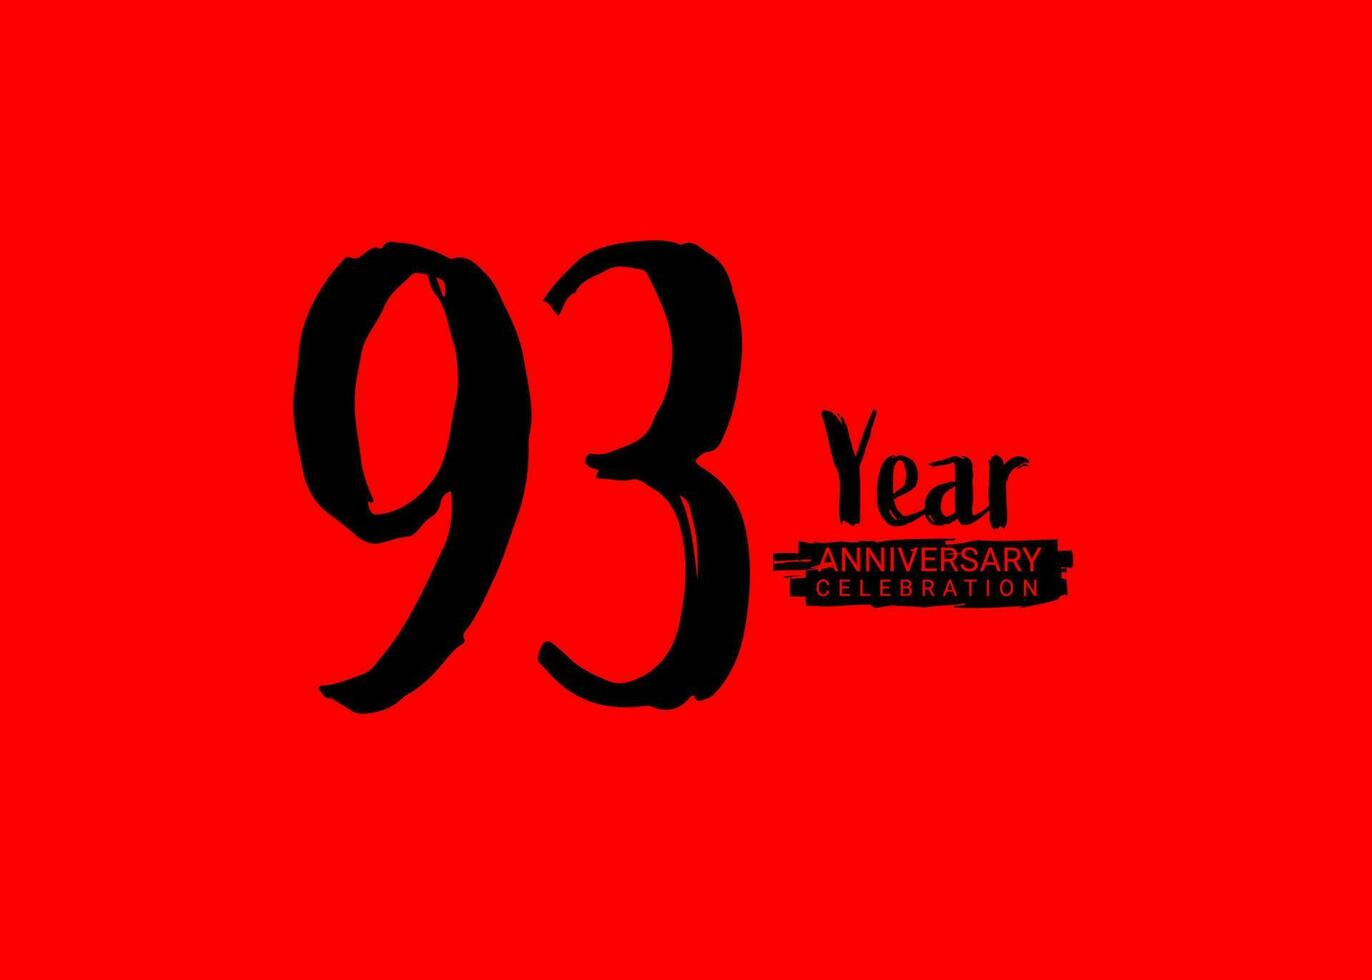 93 år årsdag firande logotyp på röd bakgrund, 93 siffra logotyp design, 93:a födelsedag logotyp, logotyp årsdag, vektor årsdag för firande, affisch, inbjudan kort